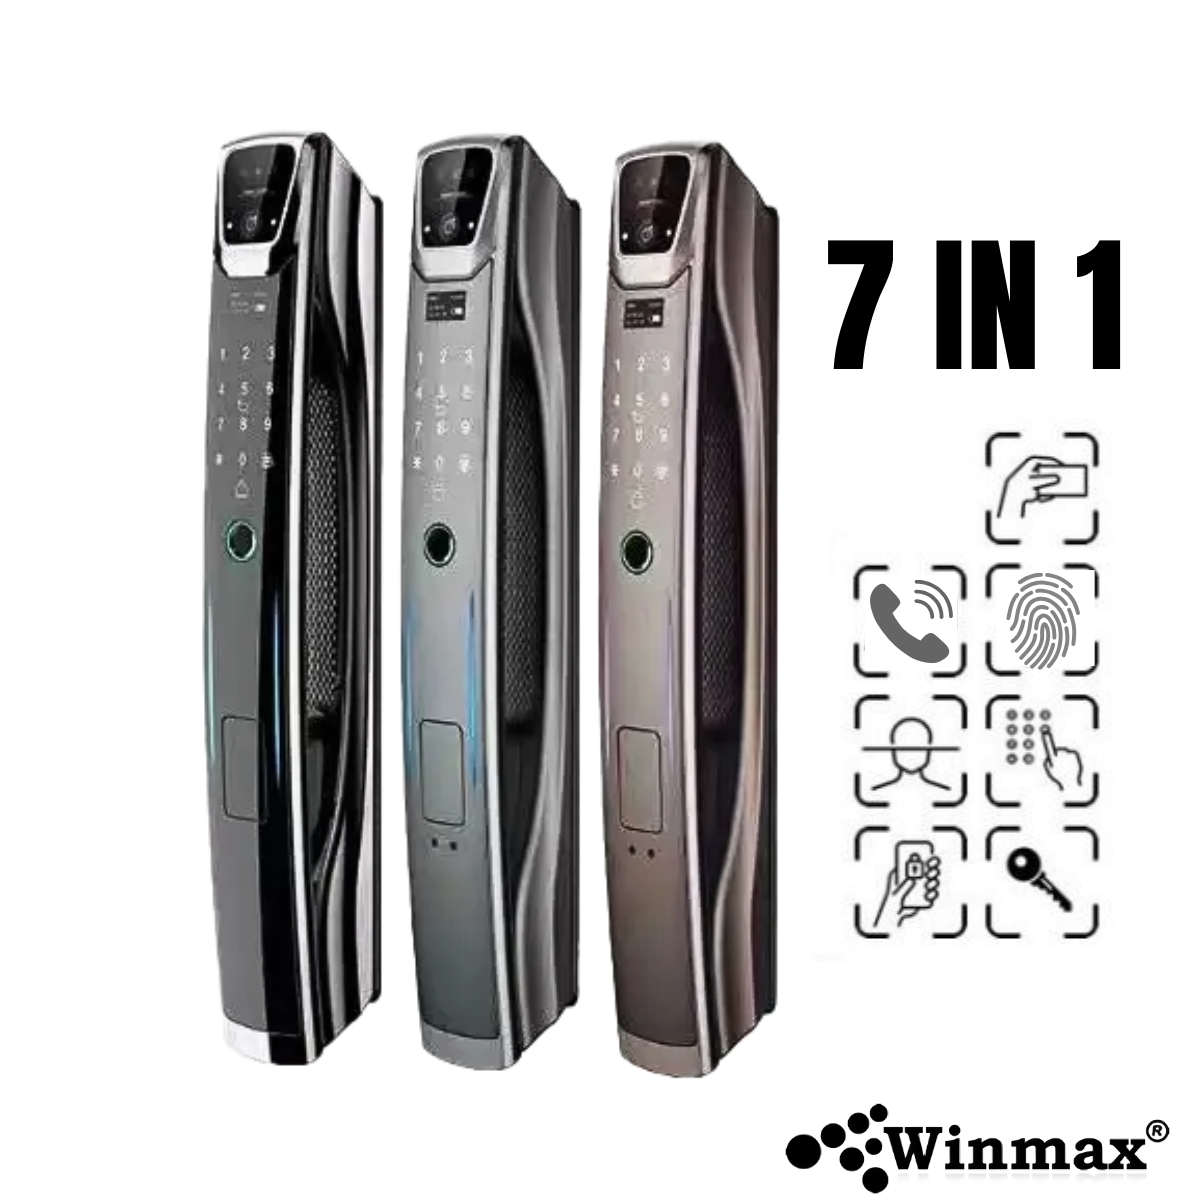 Fingerprint Door Lock and Facial Recognition APP 7in1 Winmax-P16